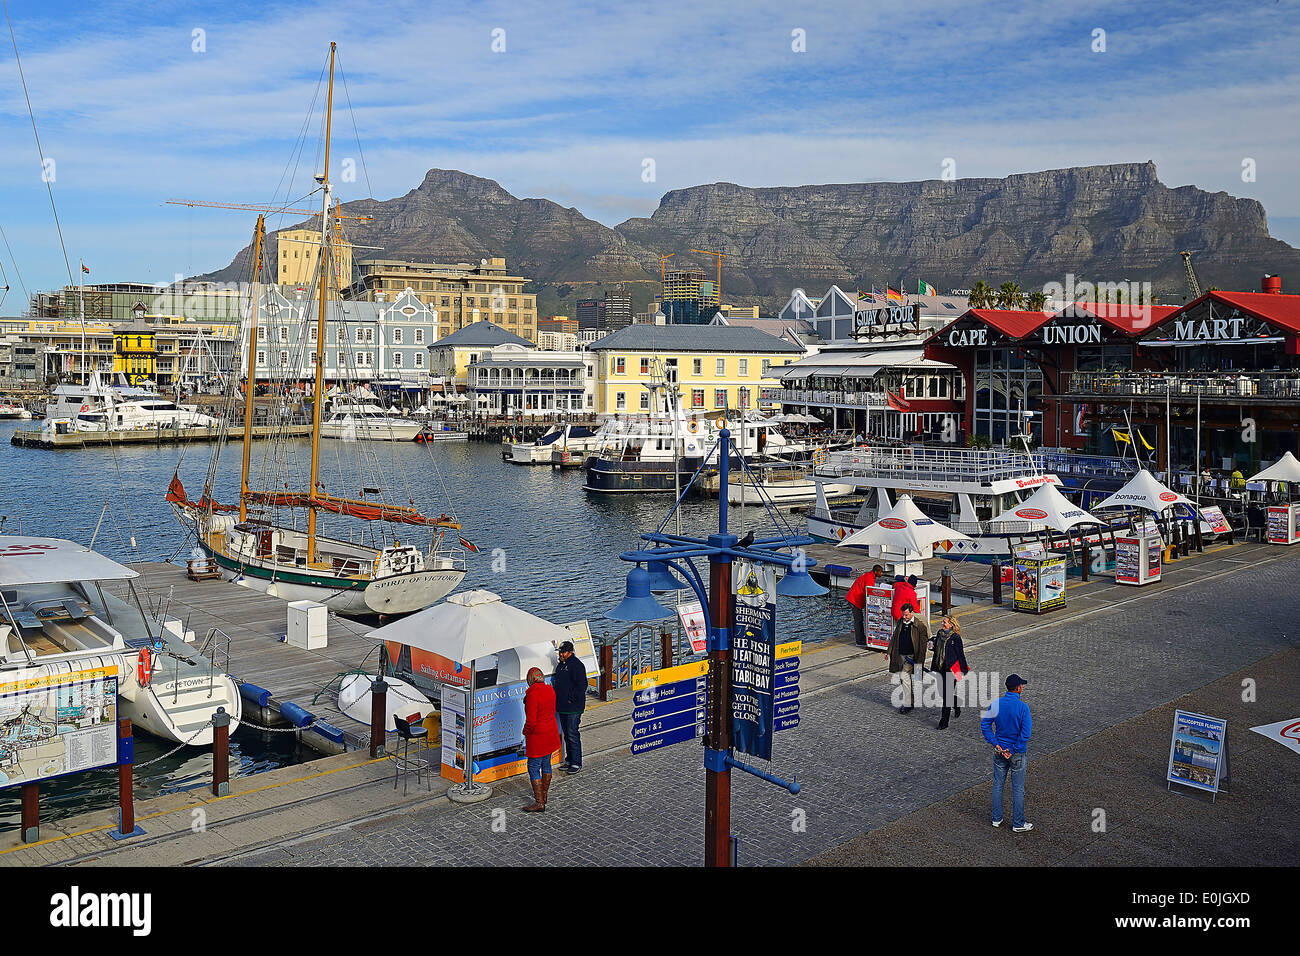 Victoria Und Alfred Waterfront, Touristisches Zentrum, Im Hintergrund der Tafelberg, Kapstadt, Western Cape, West Kap, Suedafrik Stockfoto